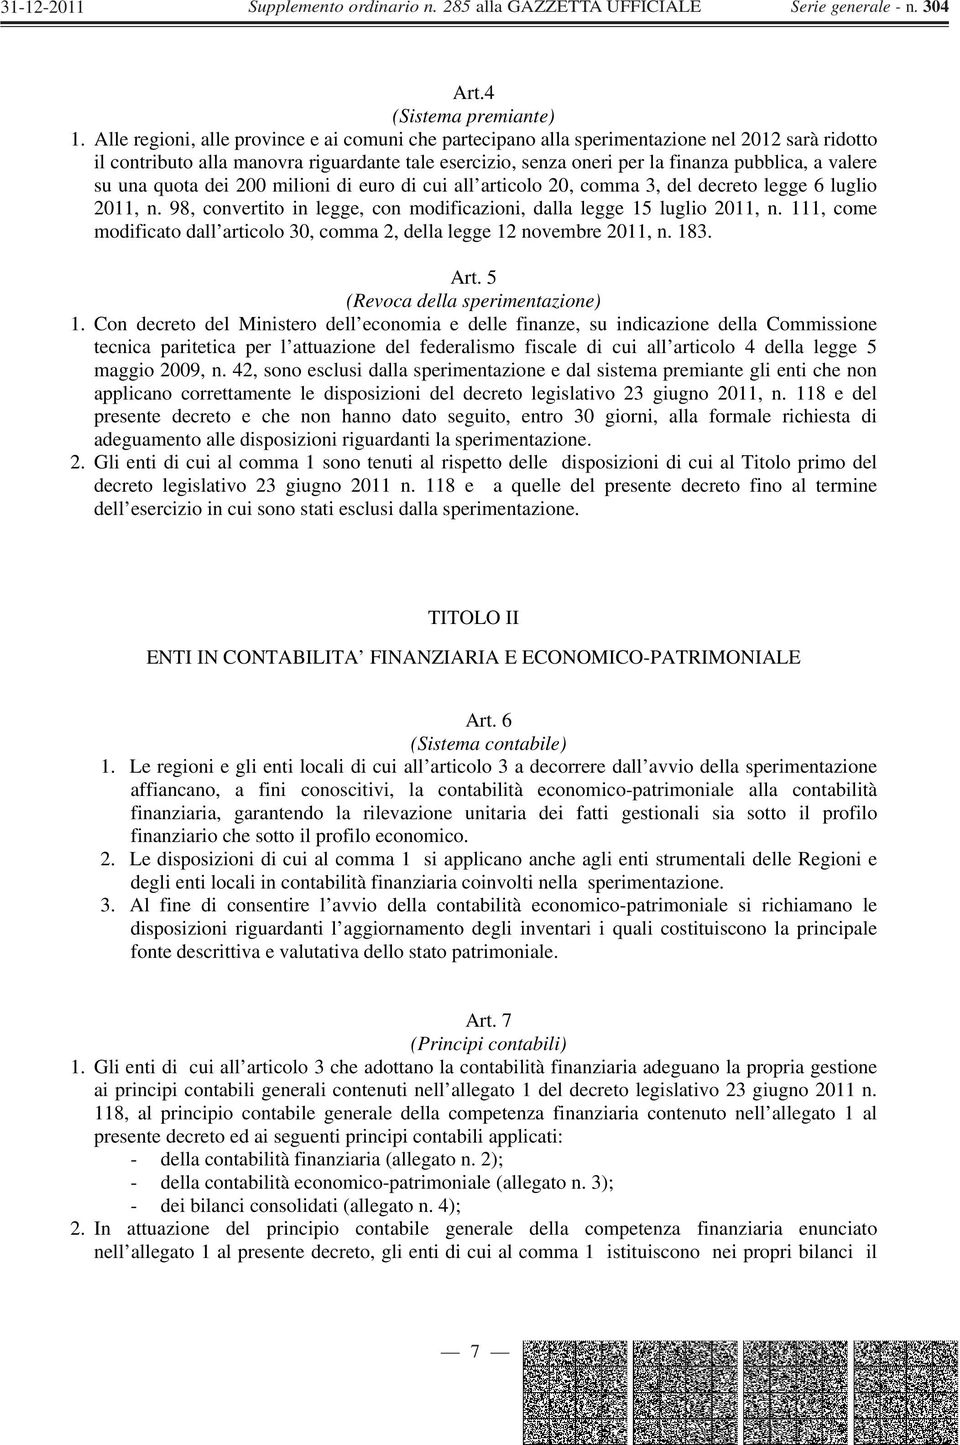 su una quota dei 200 milioni di euro di cui all articolo 20, comma 3, del decreto legge 6 luglio 2011, n. 98, convertito in legge, con modificazioni, dalla legge 15 luglio 2011, n.